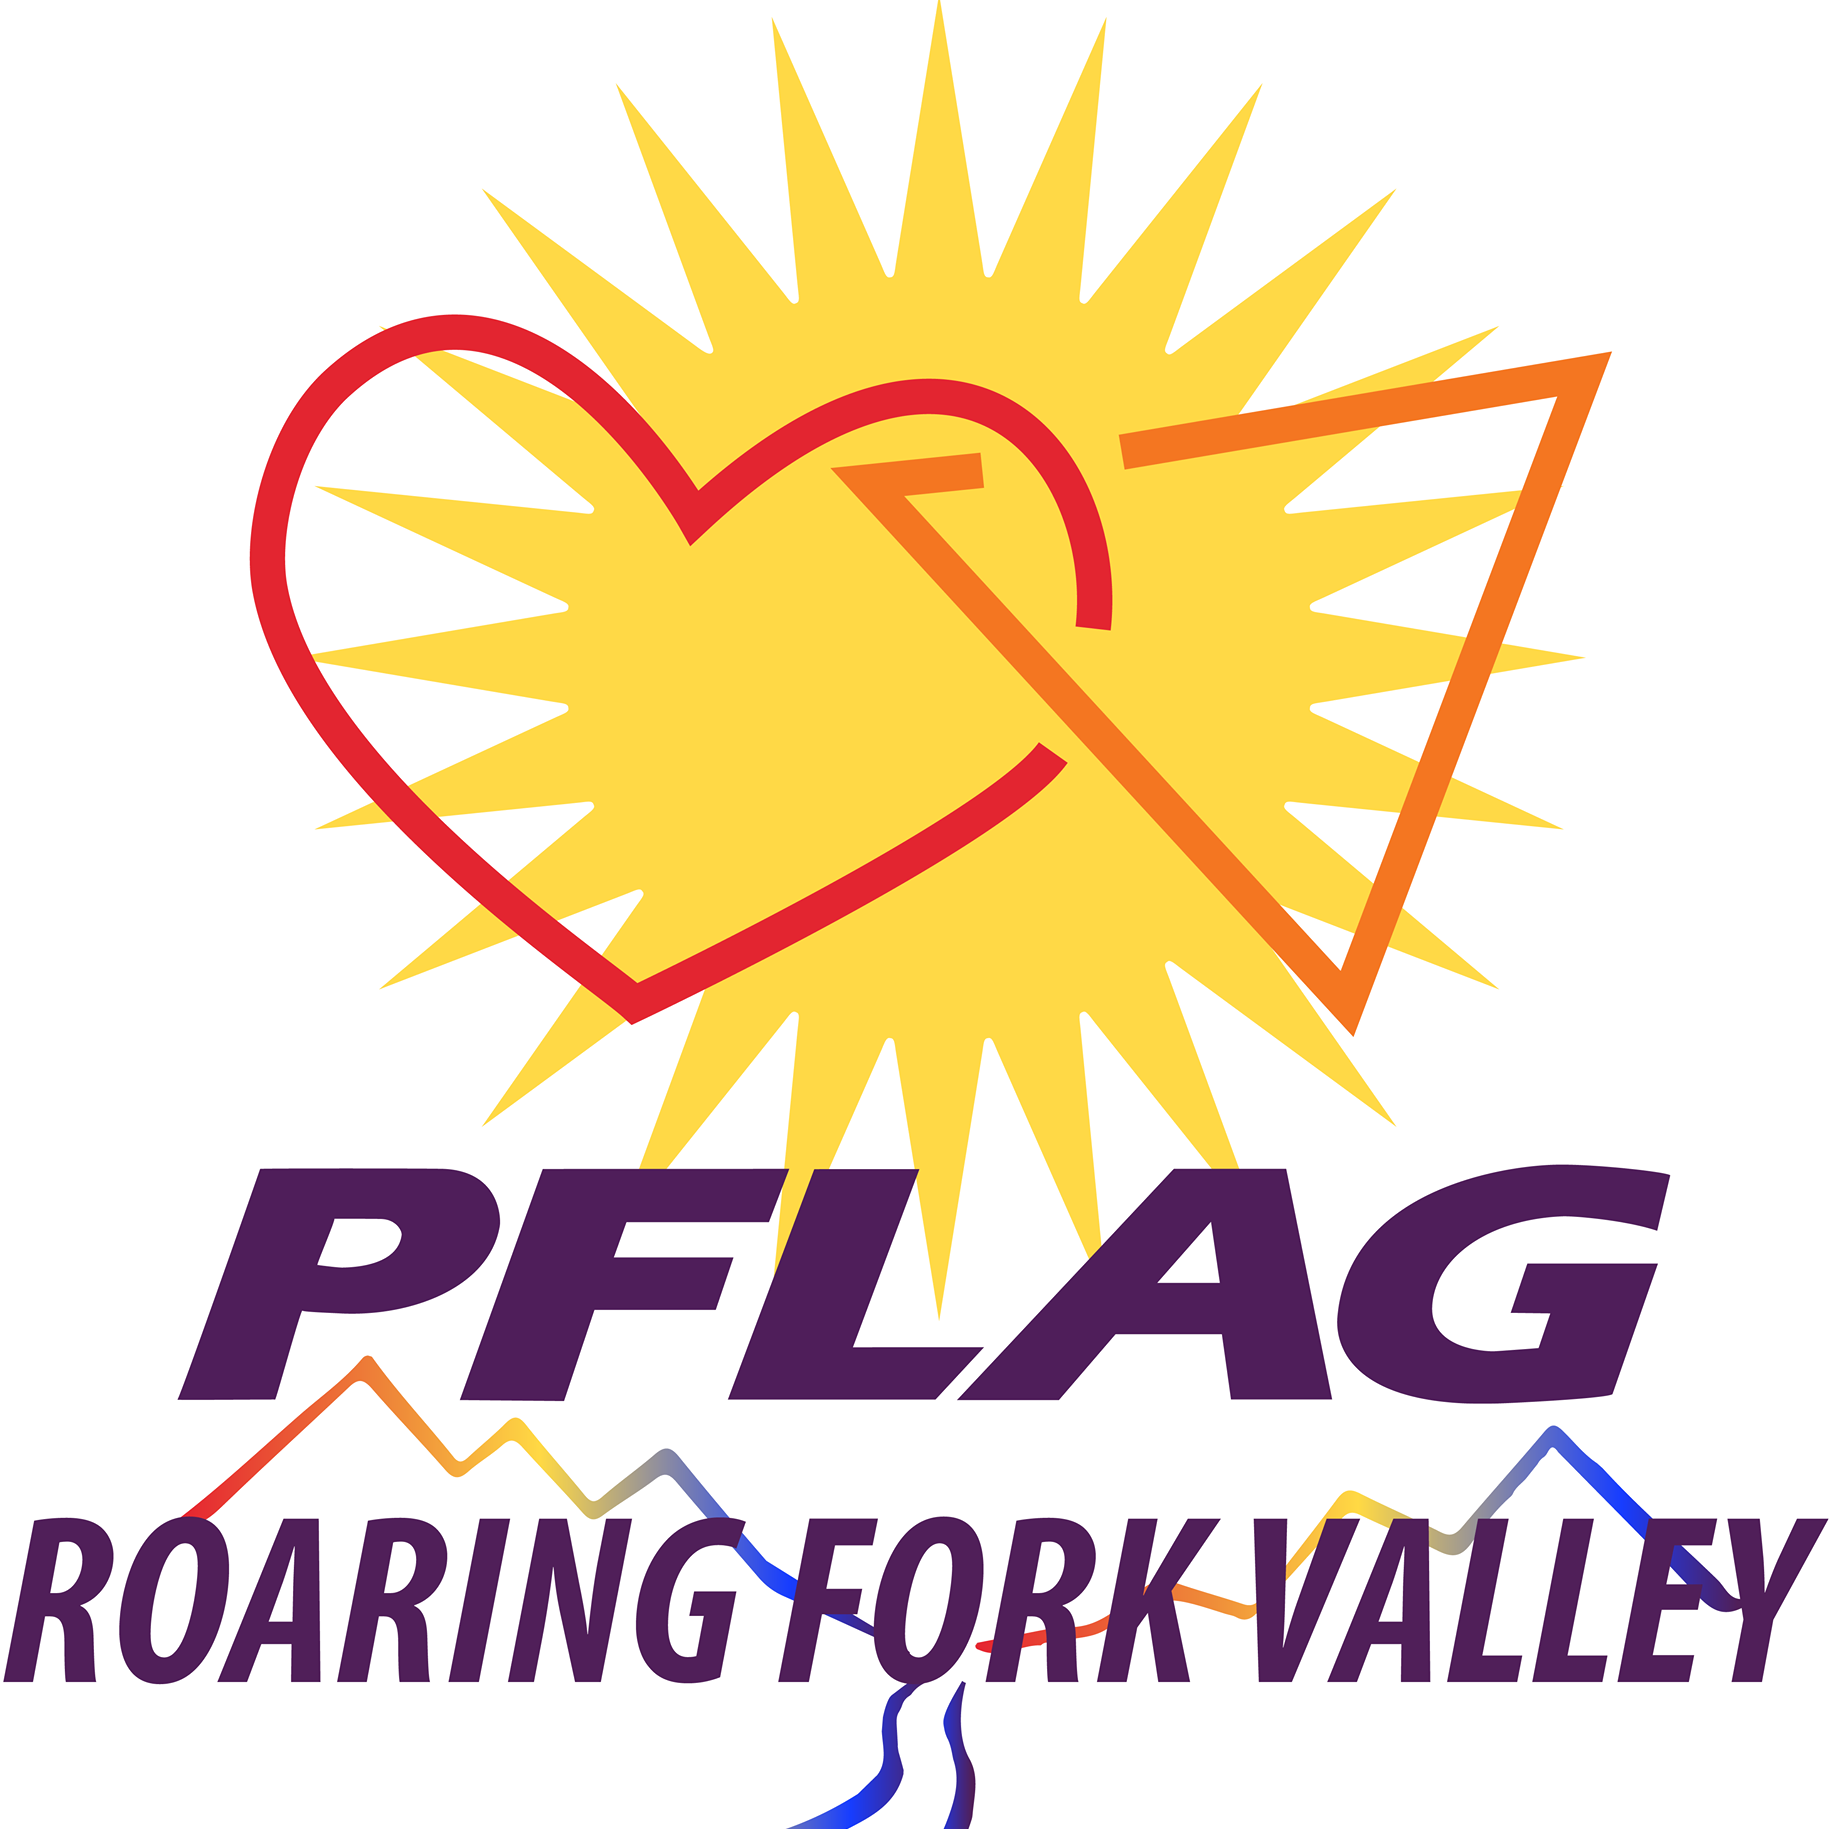 LGBTQ Organizations in Denver Colorado - PFLAG Roaring Fork Valley